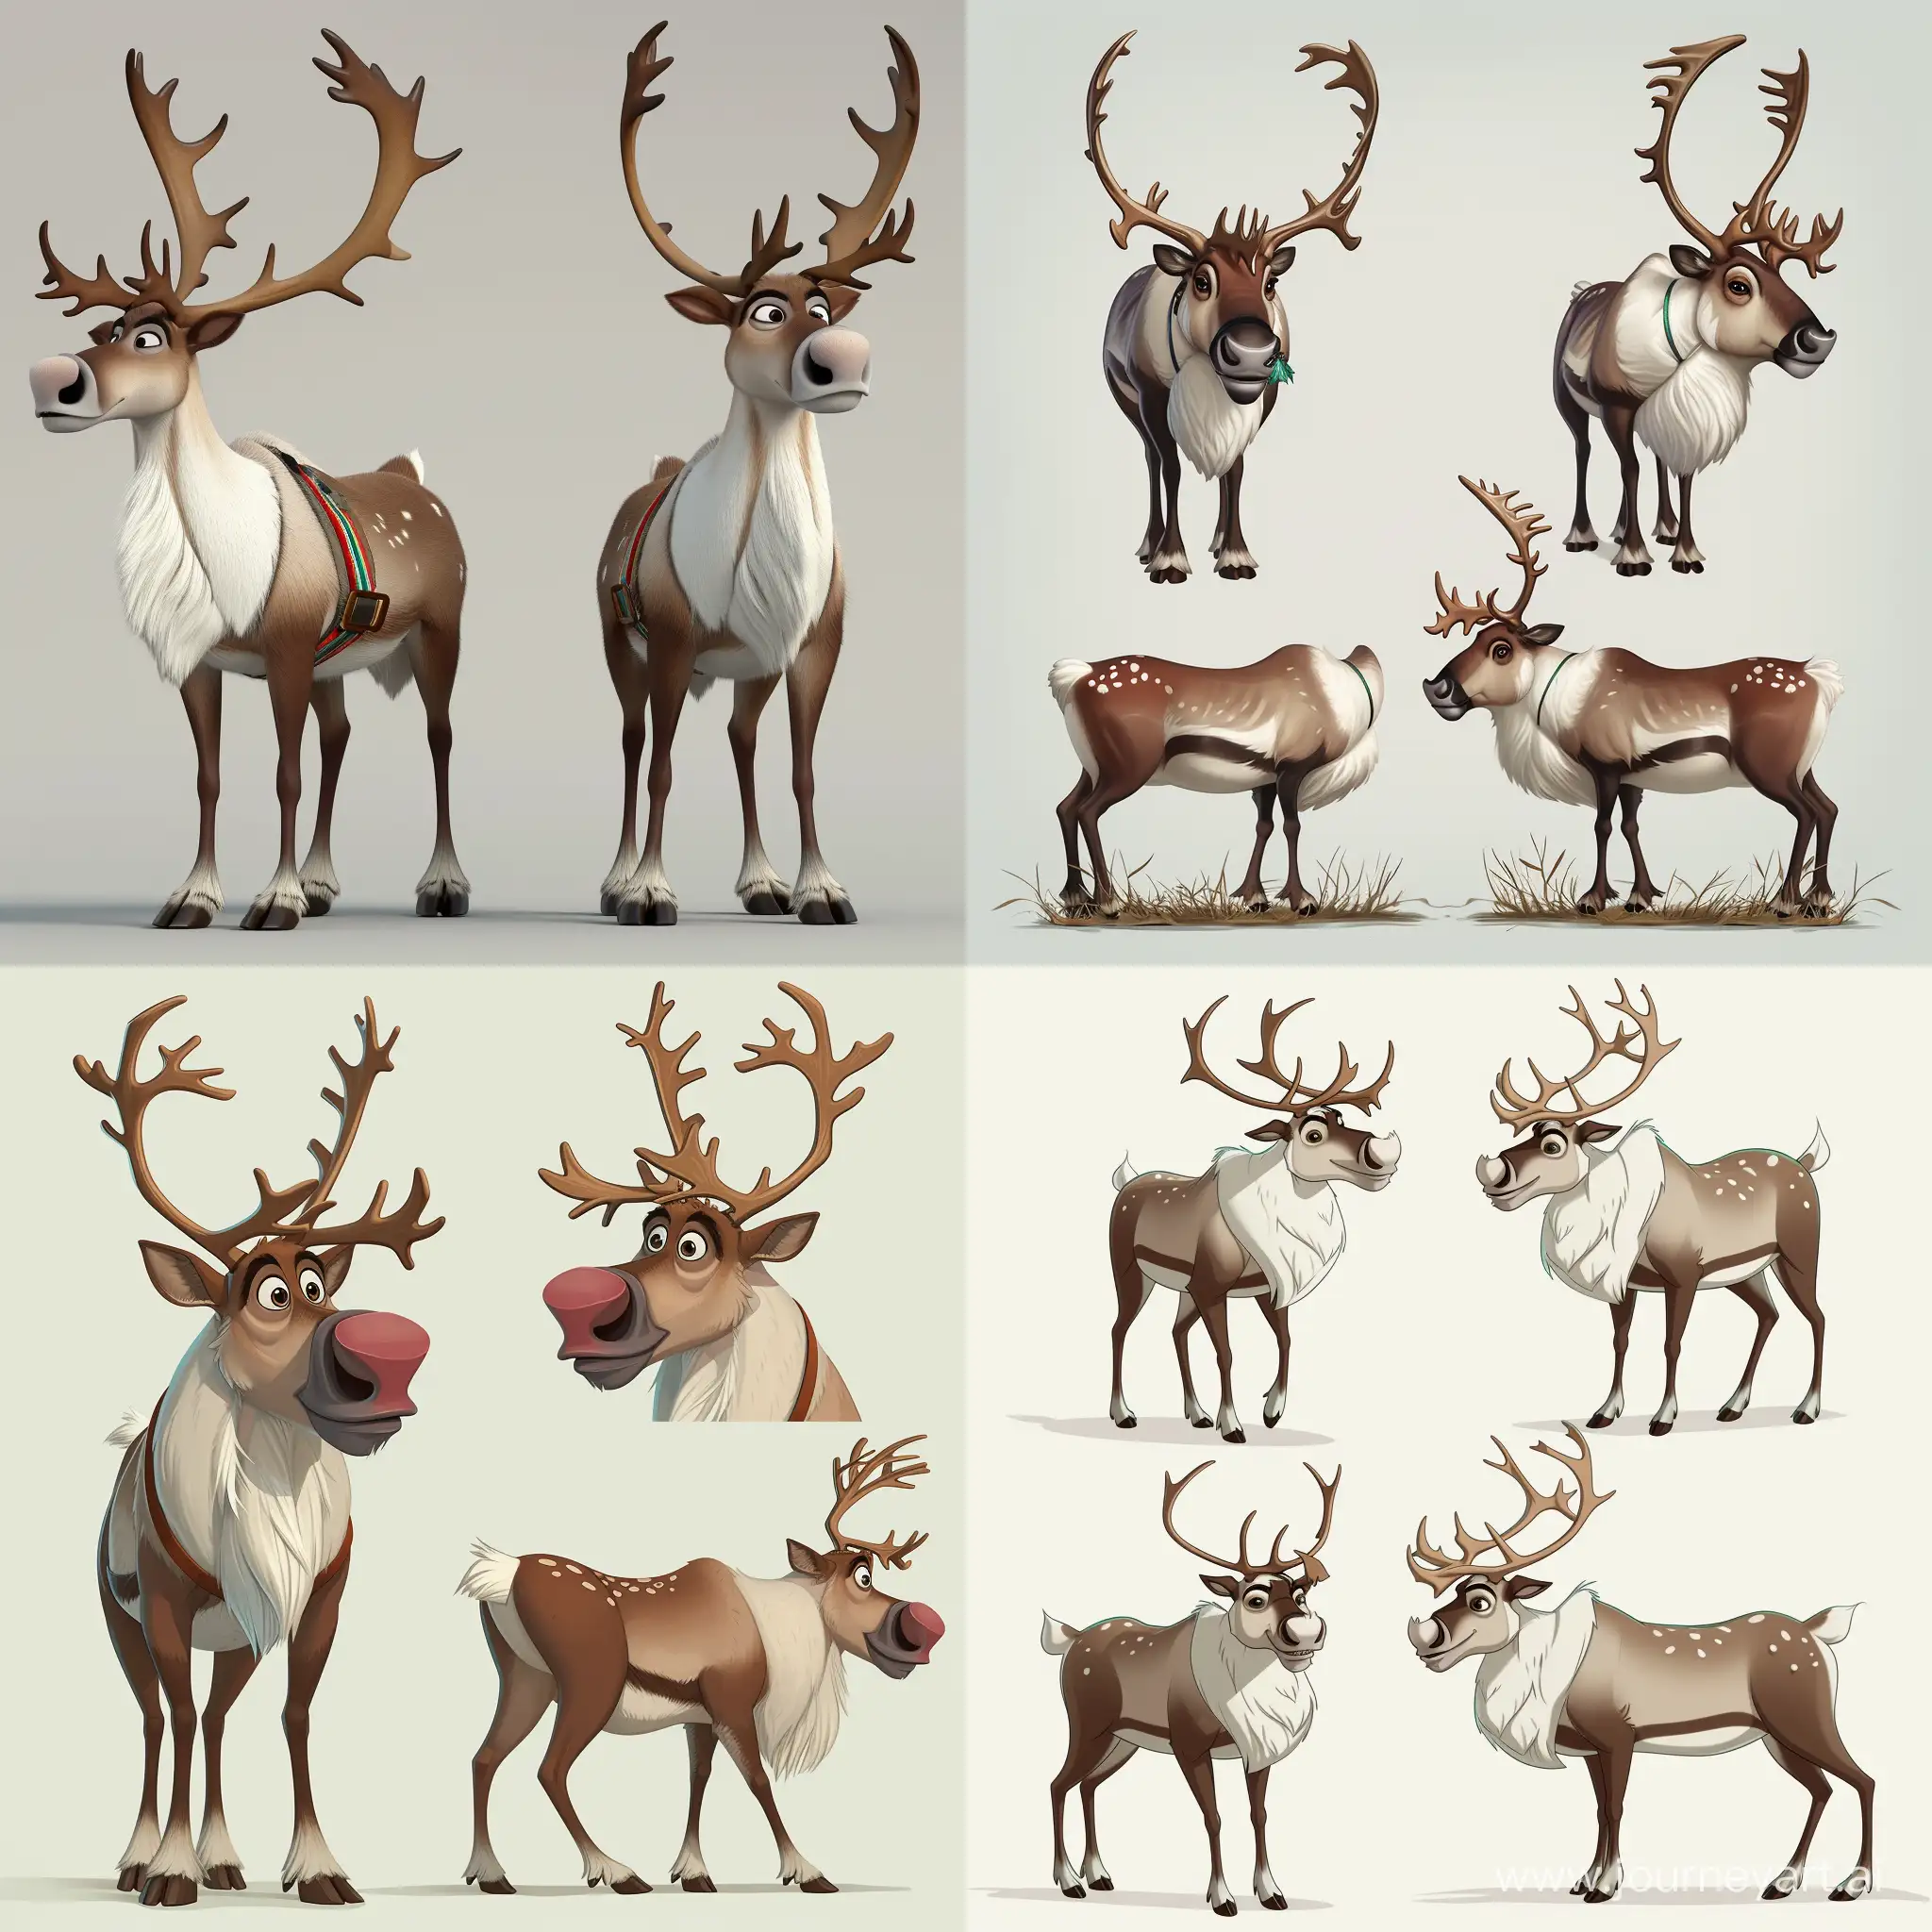 reindeer front, side, top view, detailed horns, wool, cartoon style, Pixar
